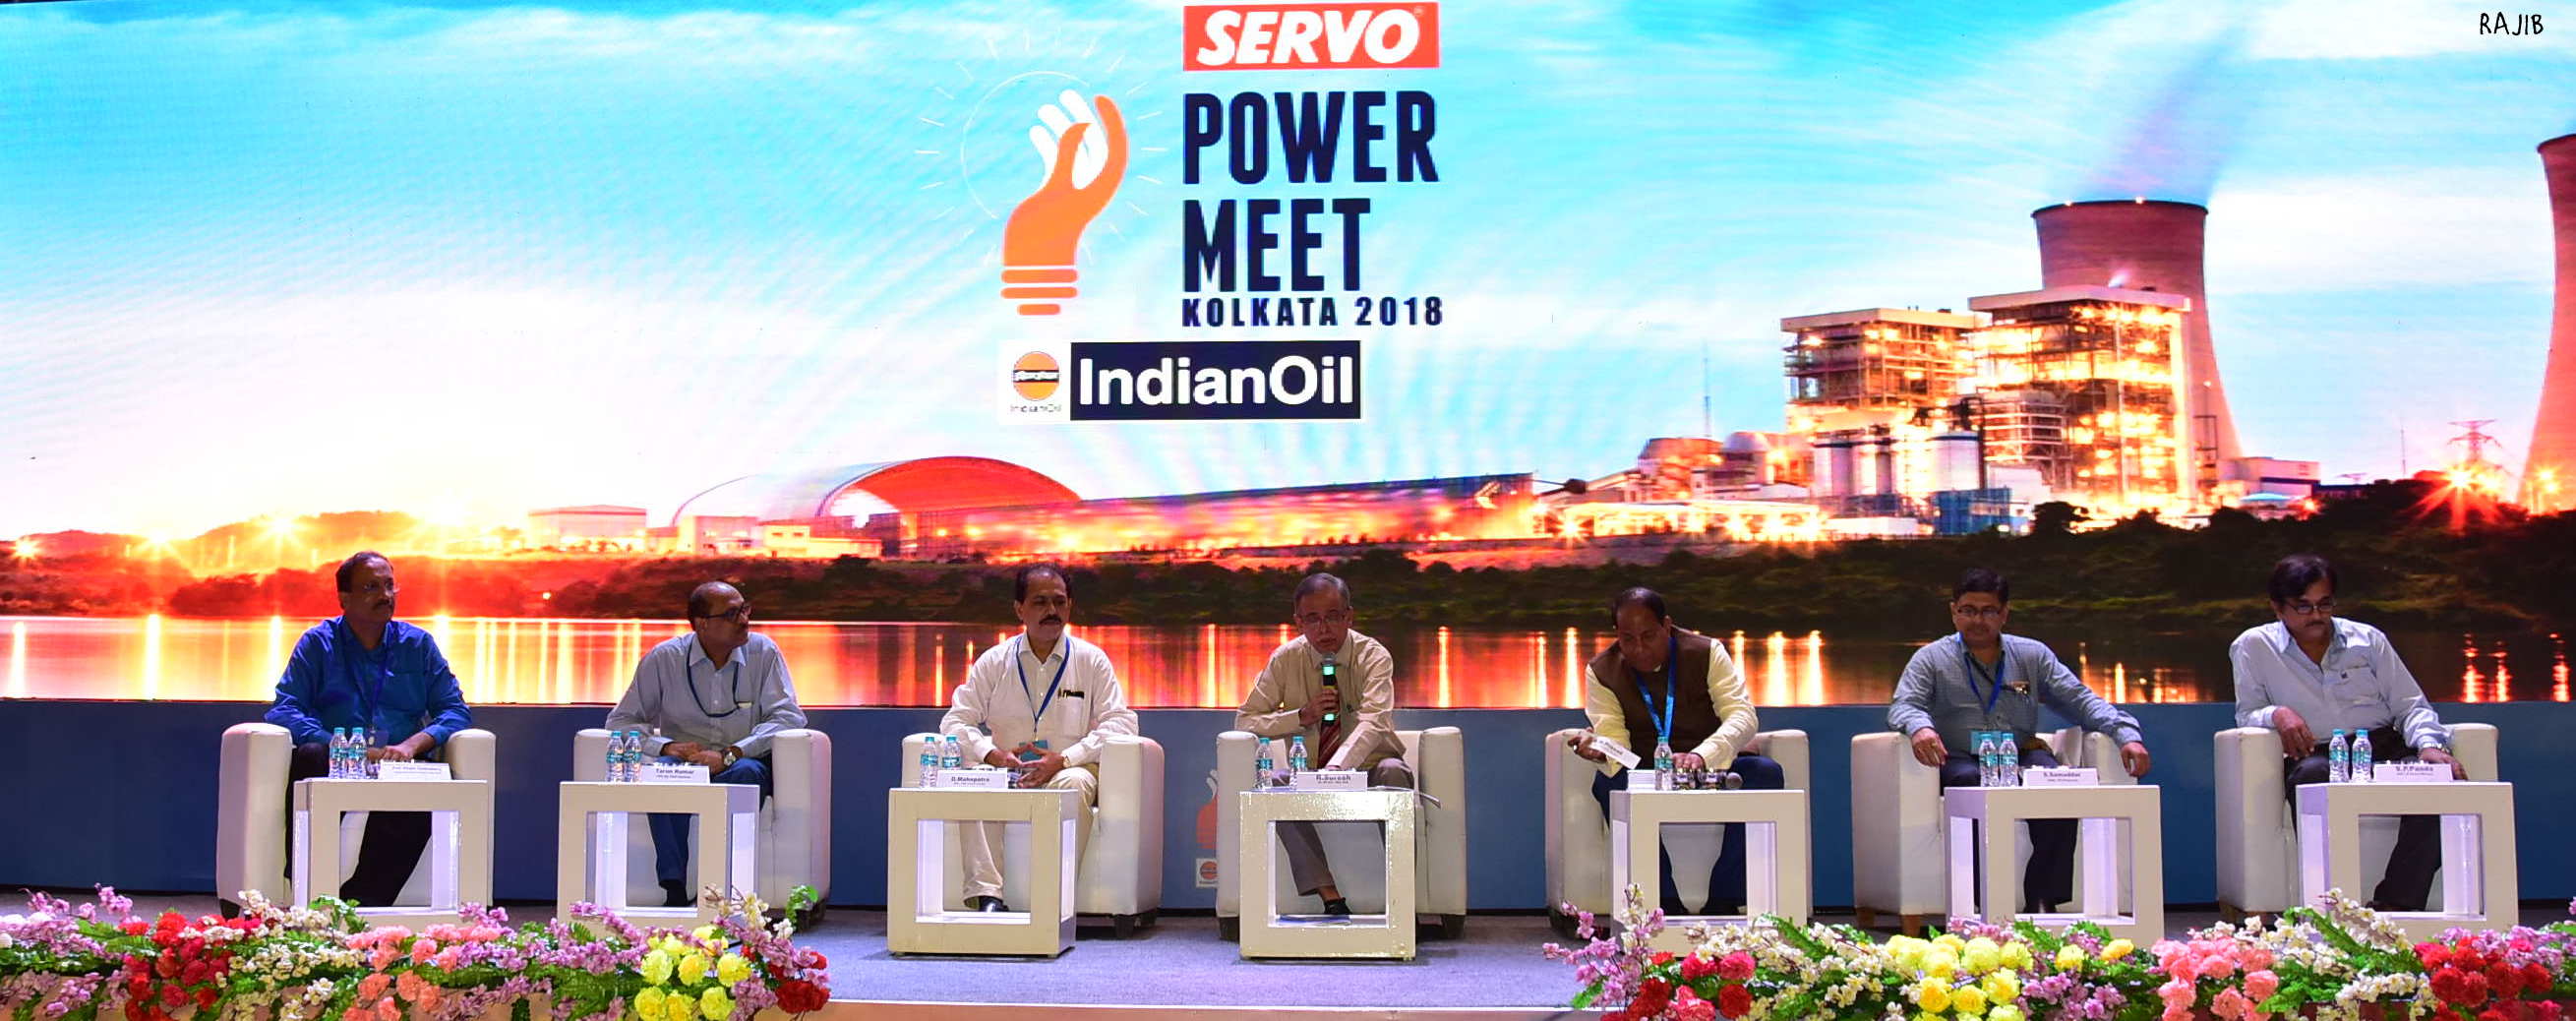 Indian Oil Servo meet 2018